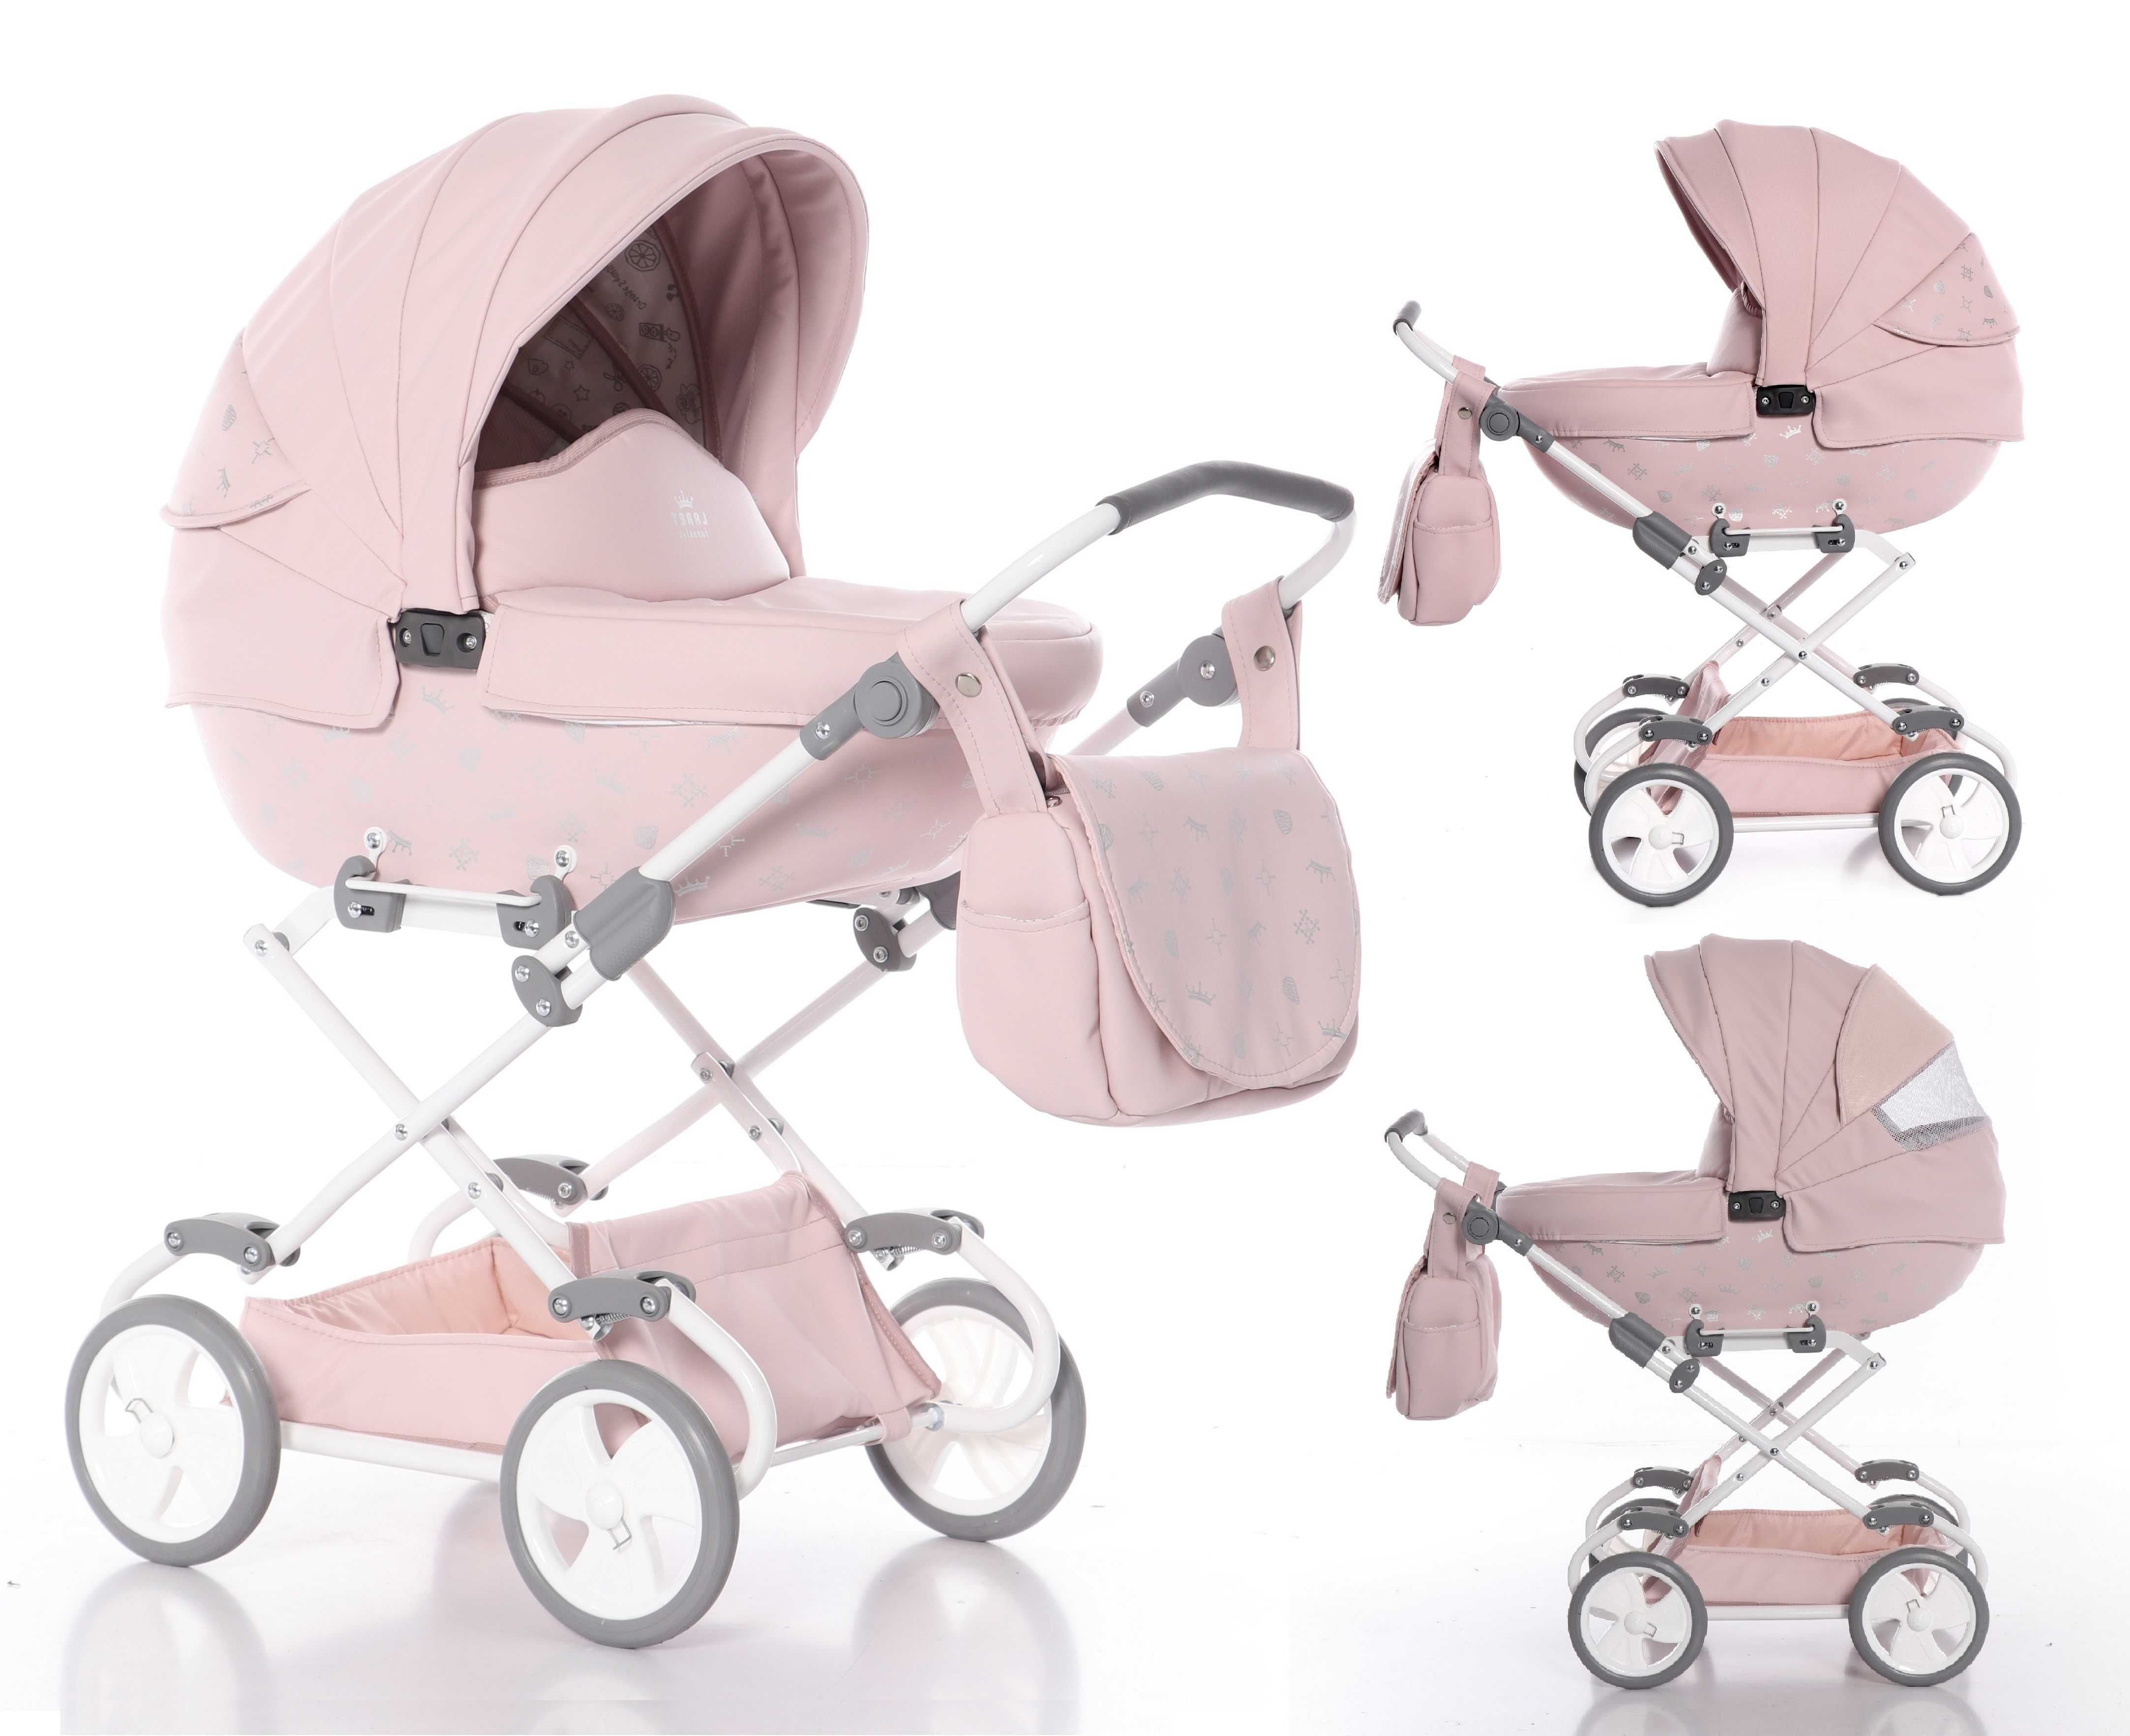 NOWY wózek dla lalki TAKO IMPERIAL Laret Mini różowy eko-skórka